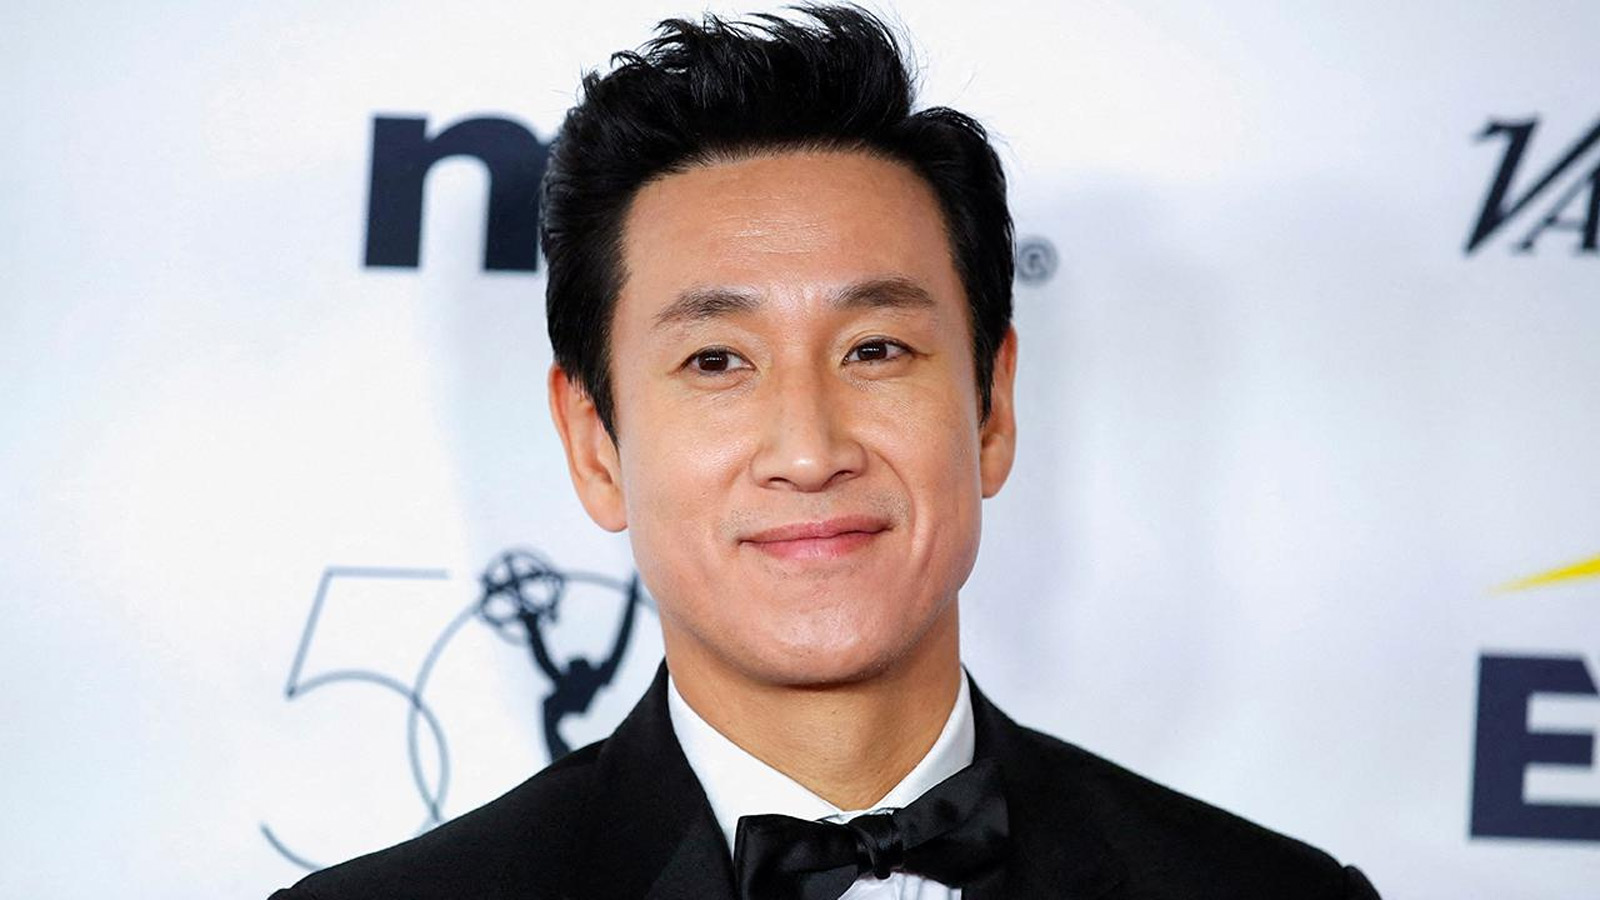 Güney Koreli aktör Lee Sun-kyun, bir otoparkta aracında ölü bulundu